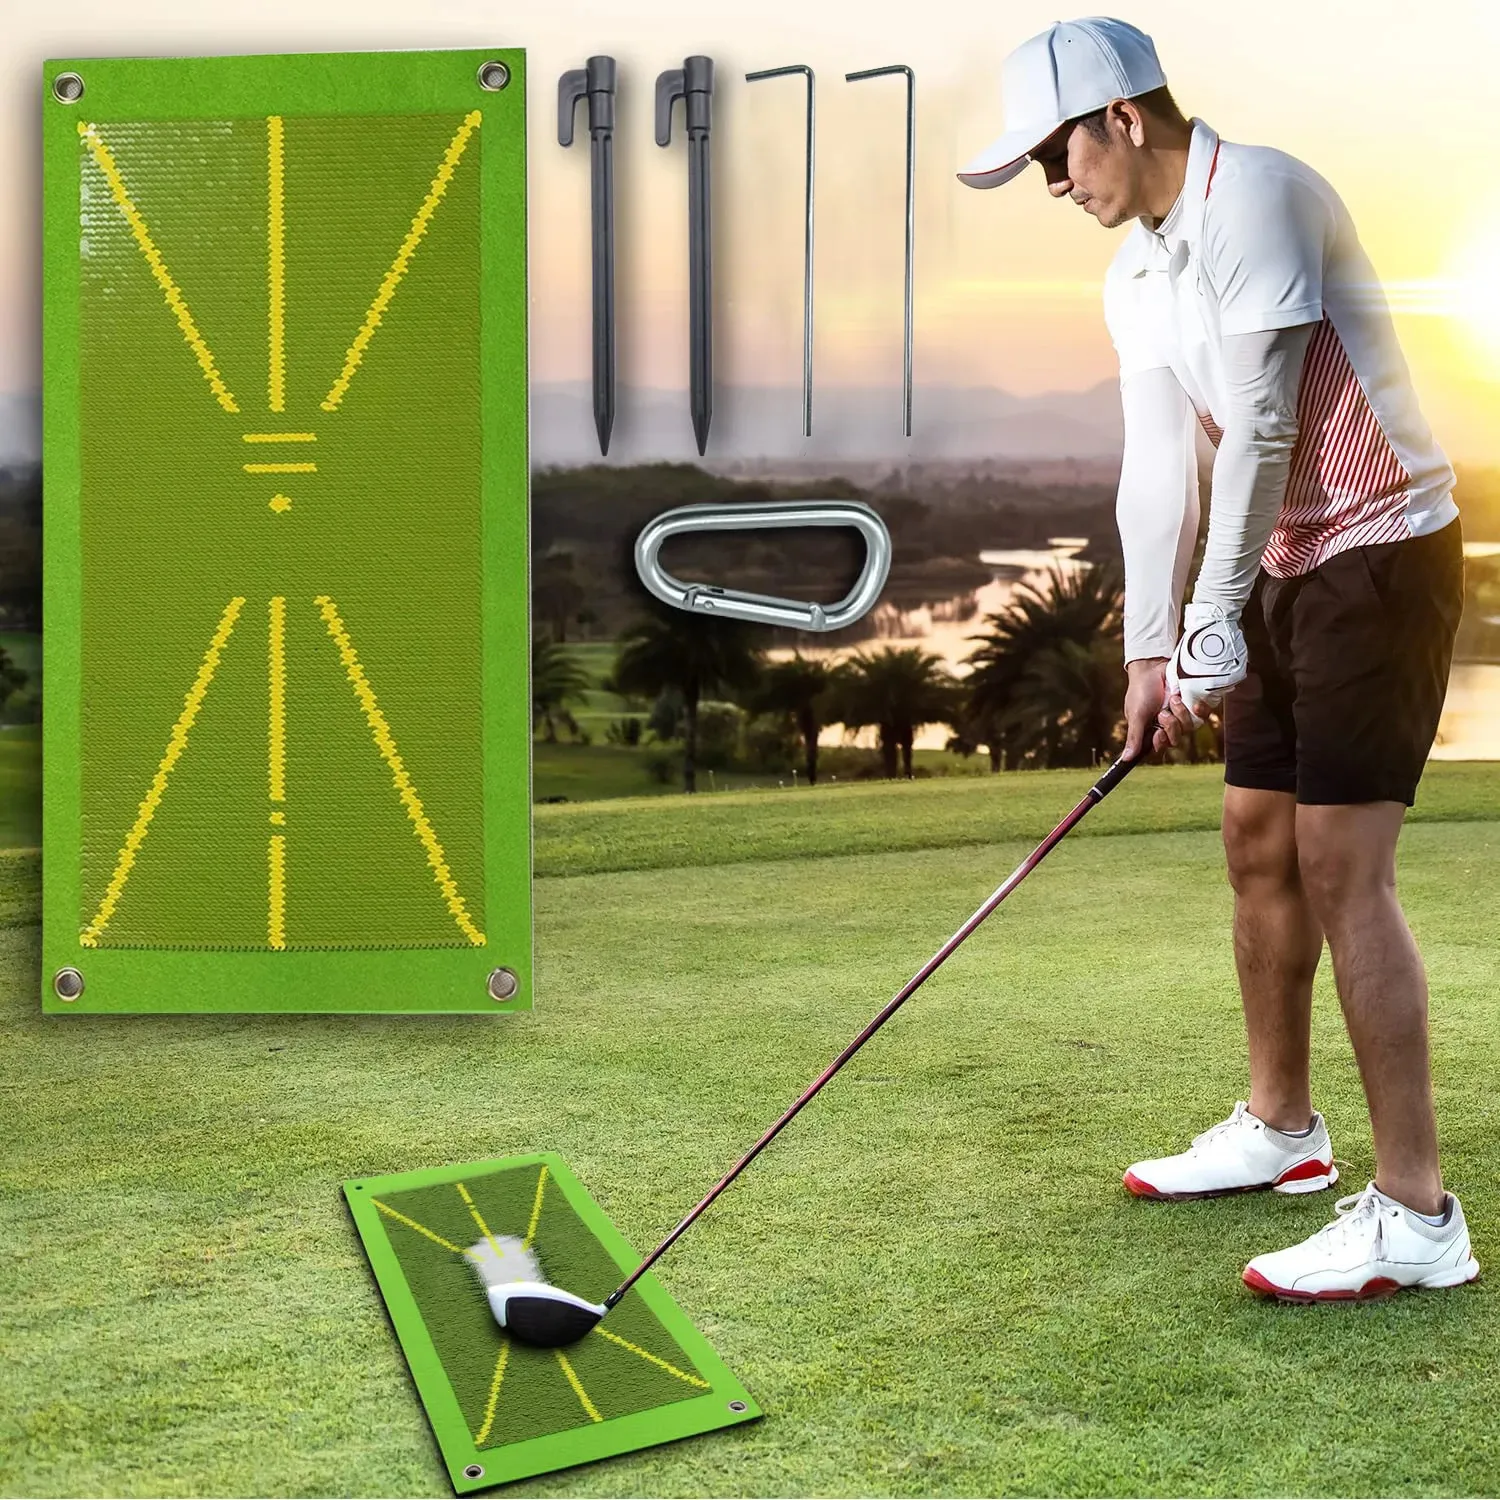 Andra golfprodukter Golfträningsmatta för svängdetektering Batting Ball Trace Detection Mat Swing Path Pads Swing Practice Pads Golf Training Pad 231120